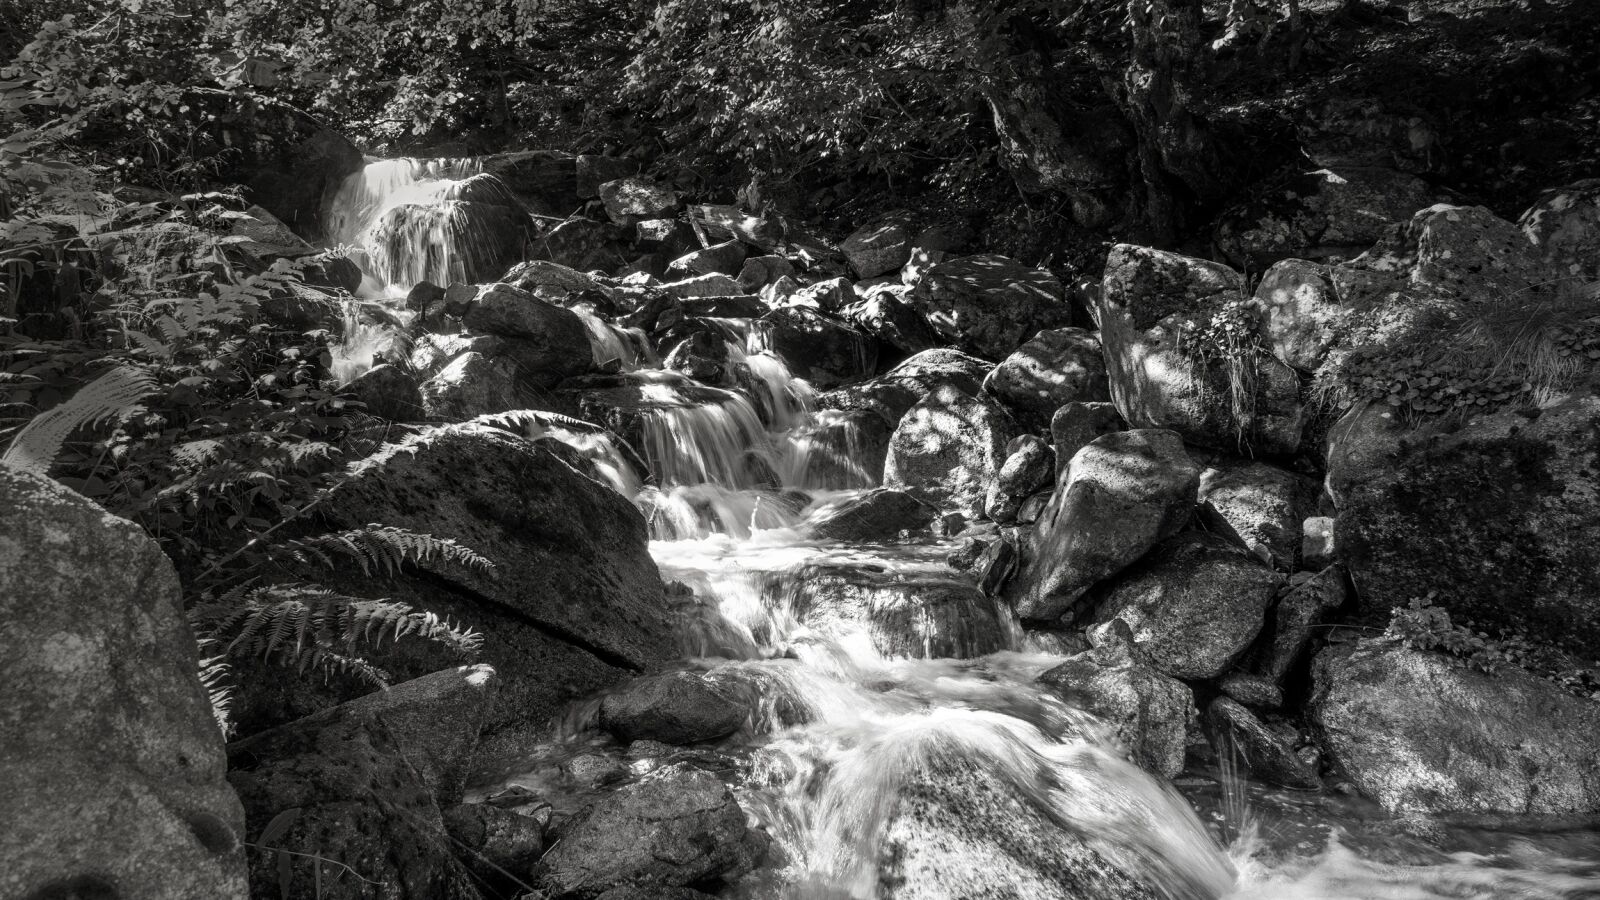 Sony Vario-Tessar T* E 16-70mm F4 ZA OSS sample photo. Nature, waterfall, landscape photography